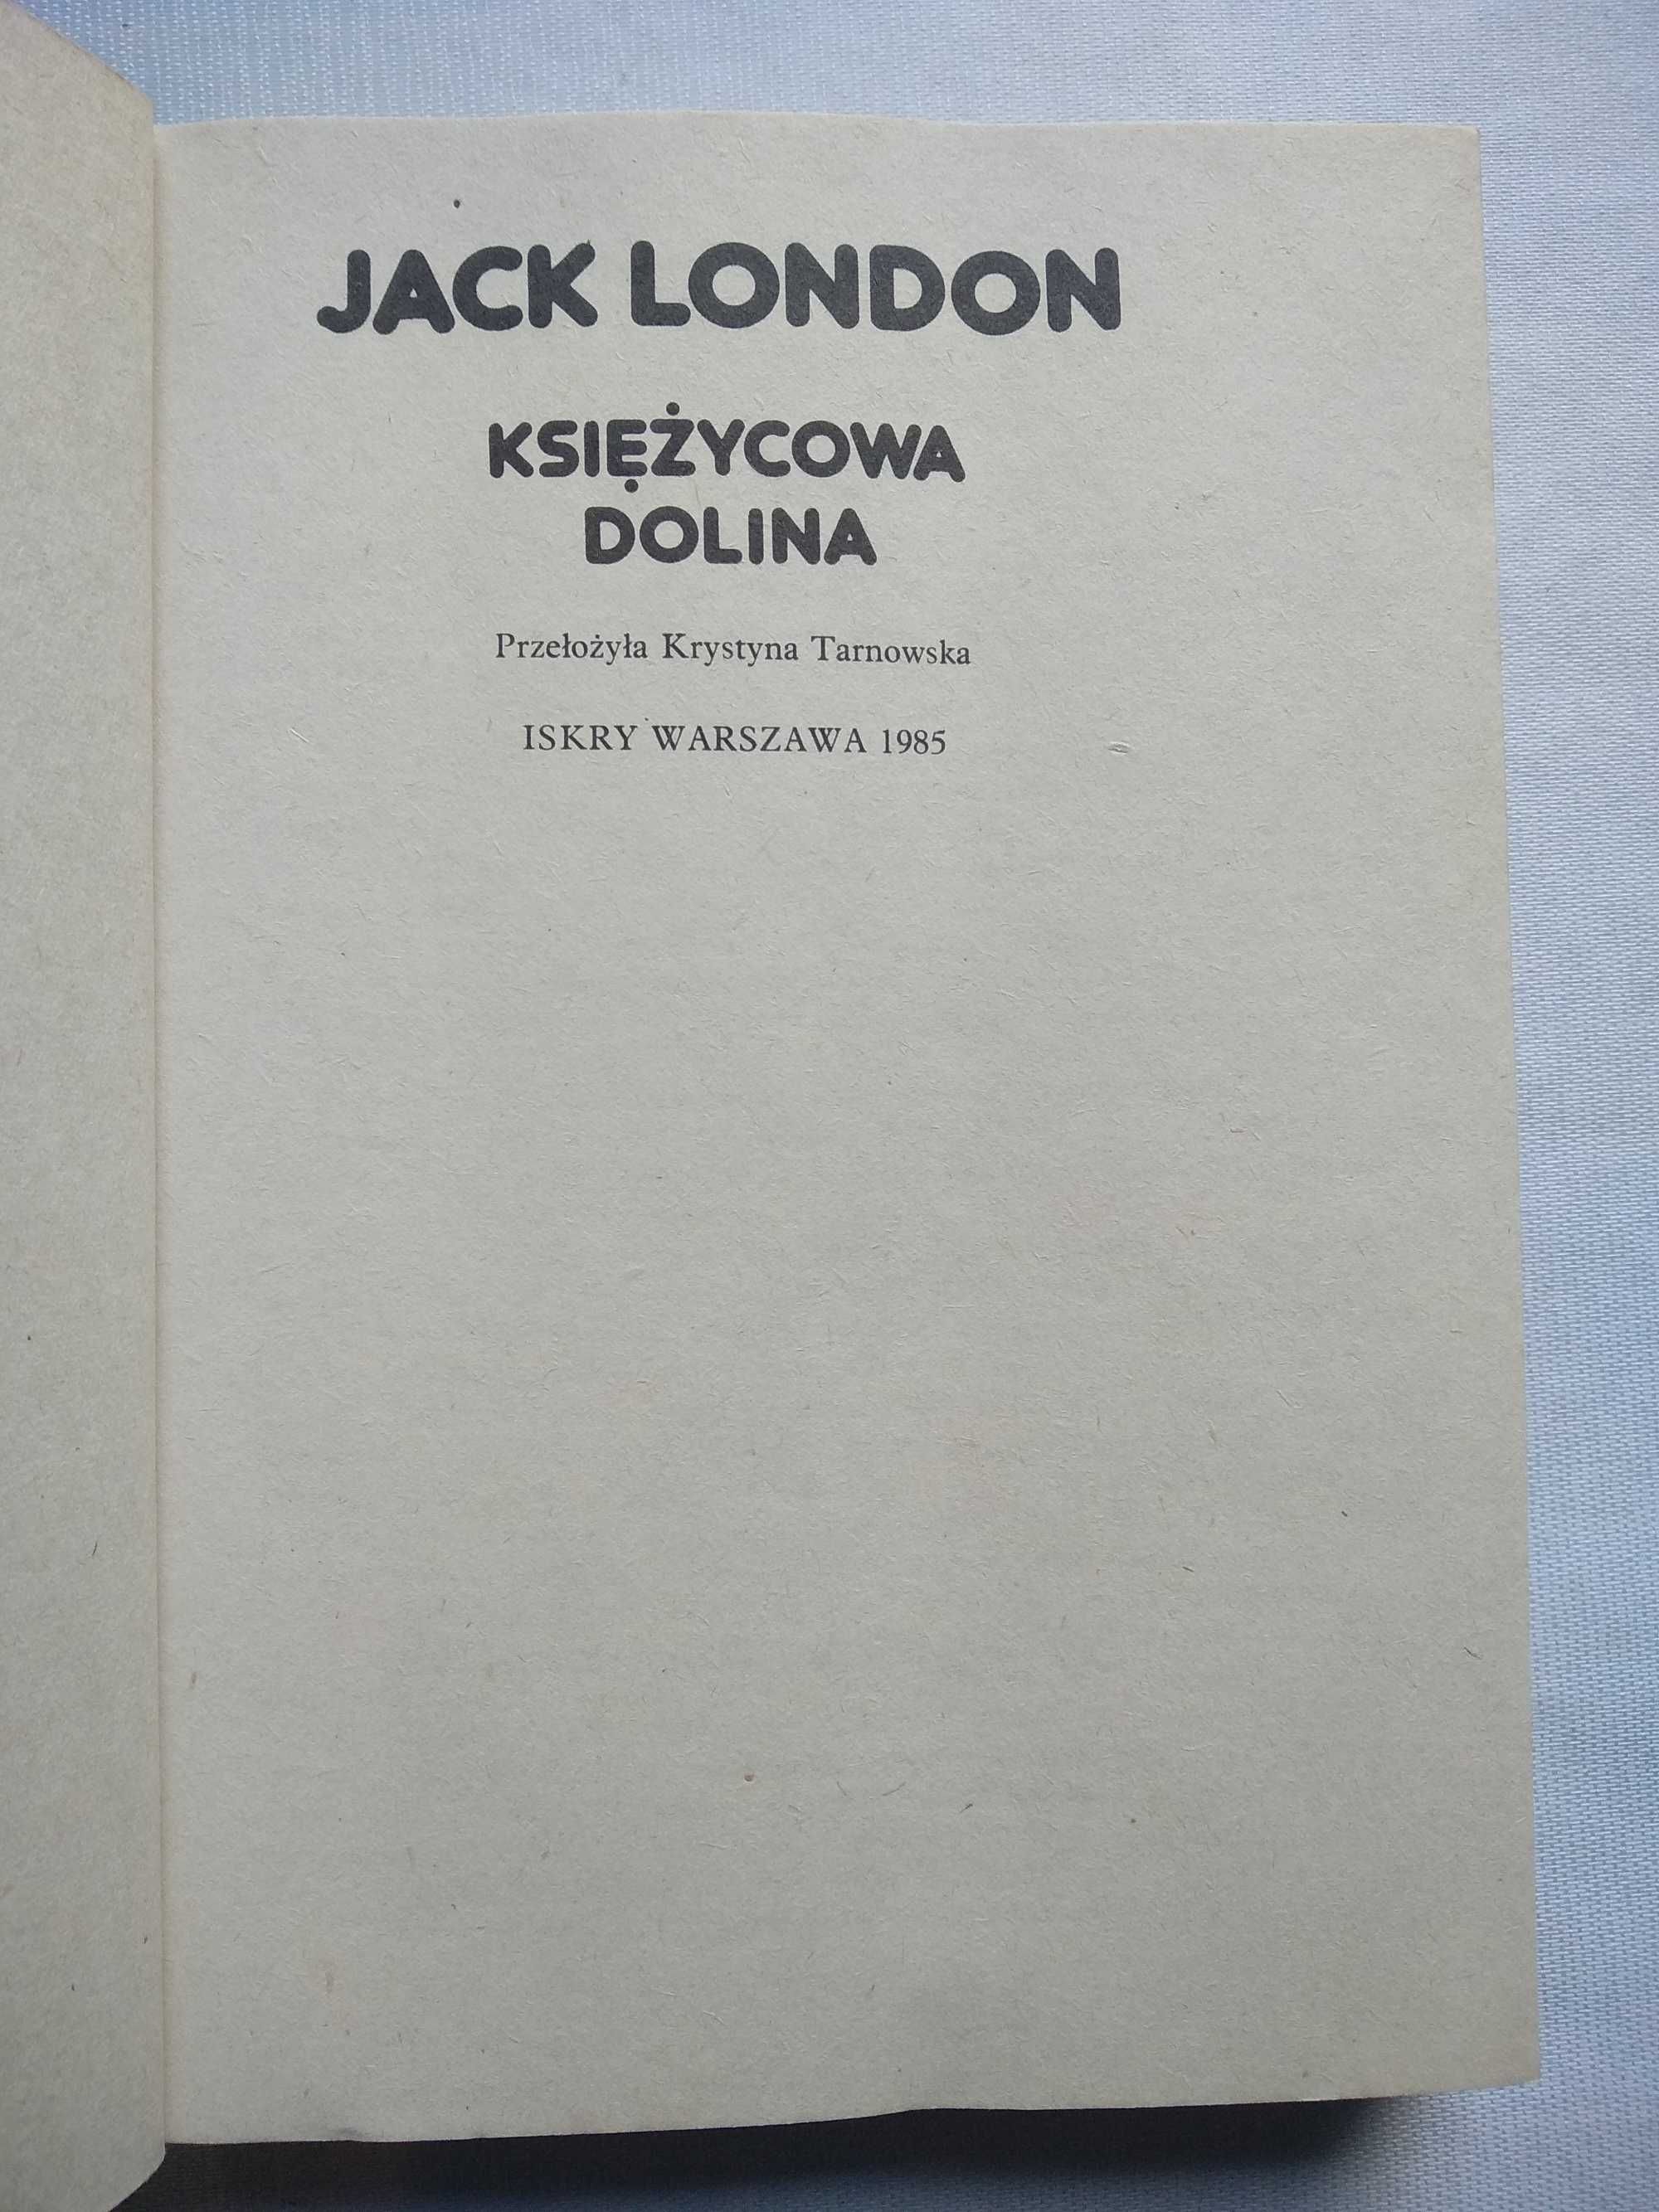 "Księżycowa dolina" Jack London